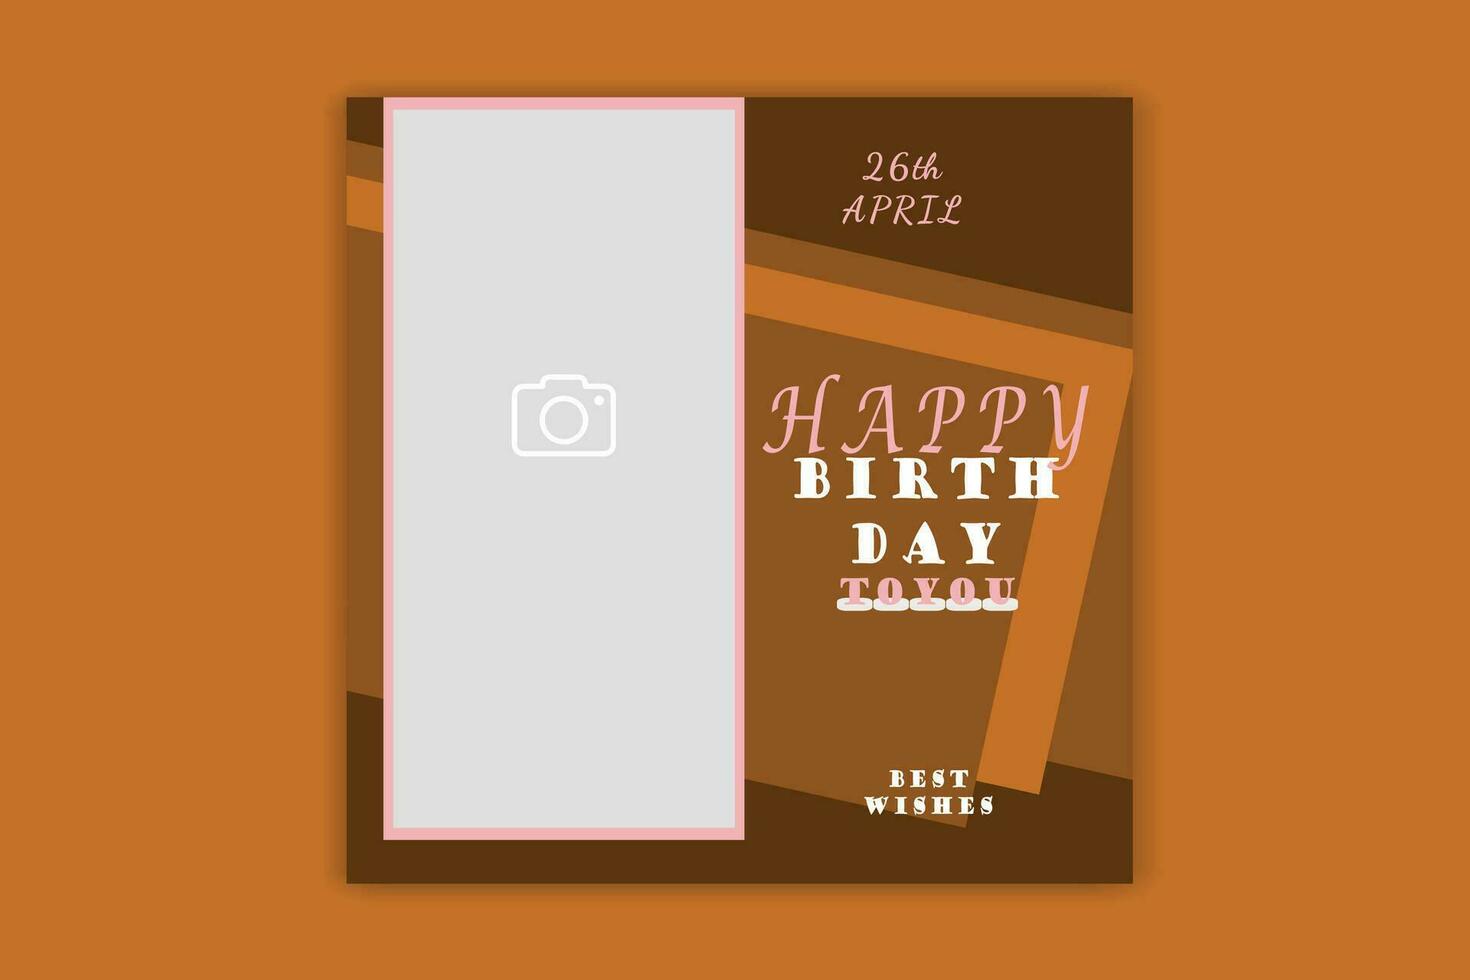 invitation card birthday social media post banner design vector